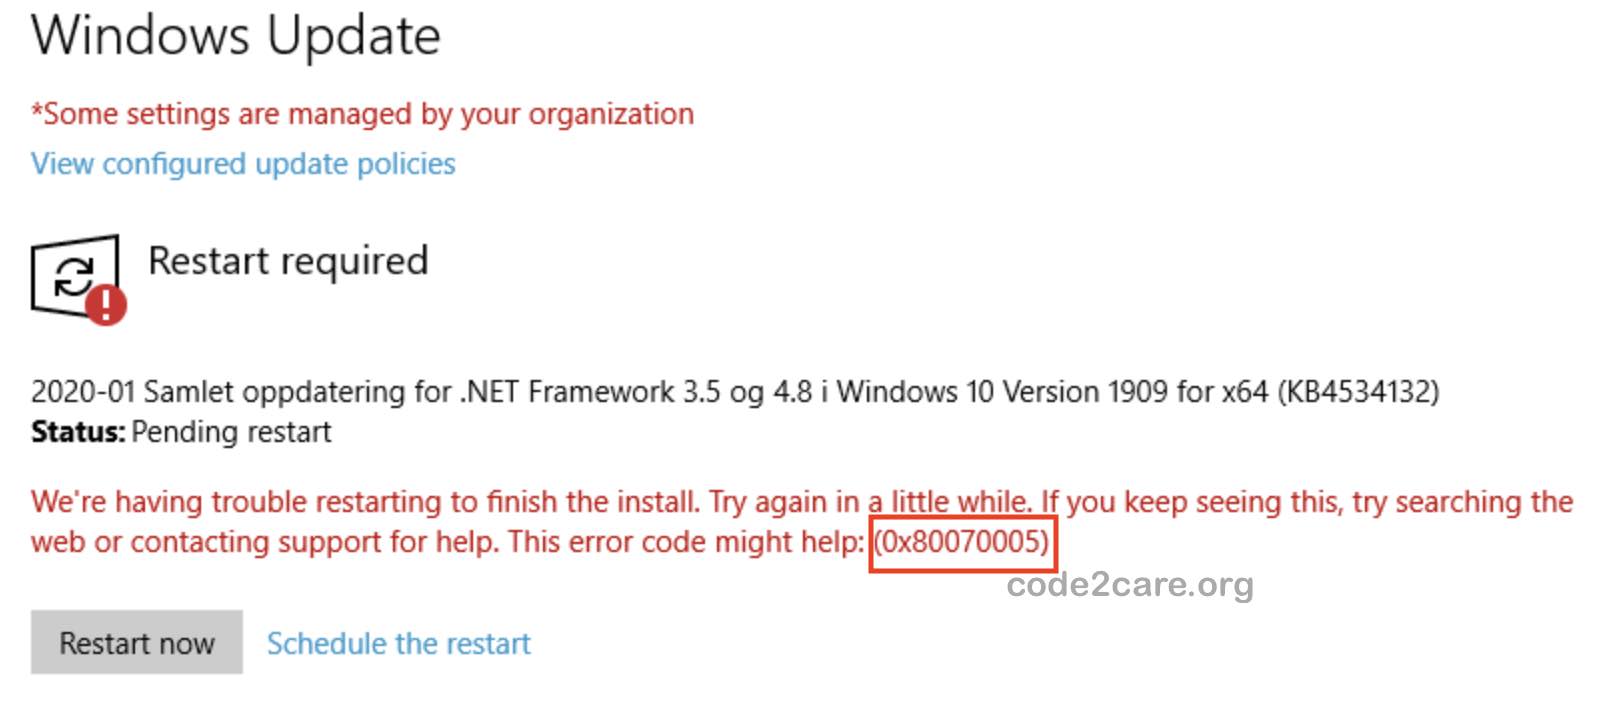 Fix Windows Update Install Error 0x80070005 - Code2care